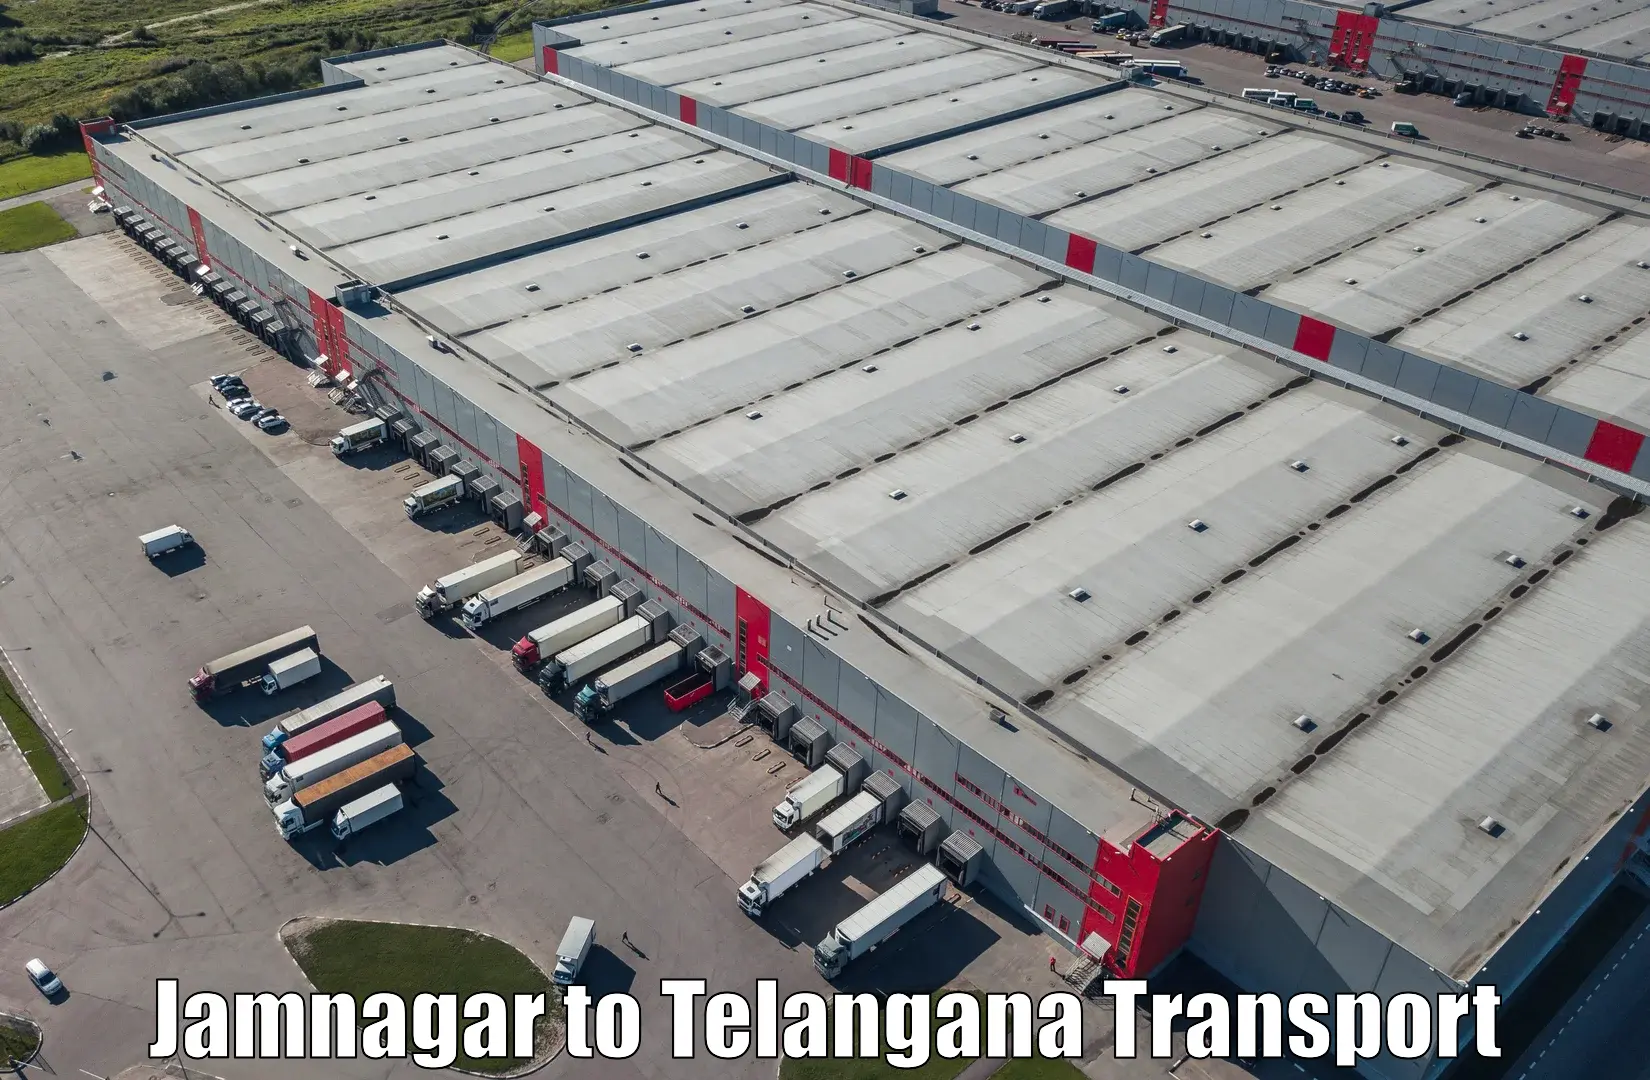 Daily transport service Jamnagar to Parkal